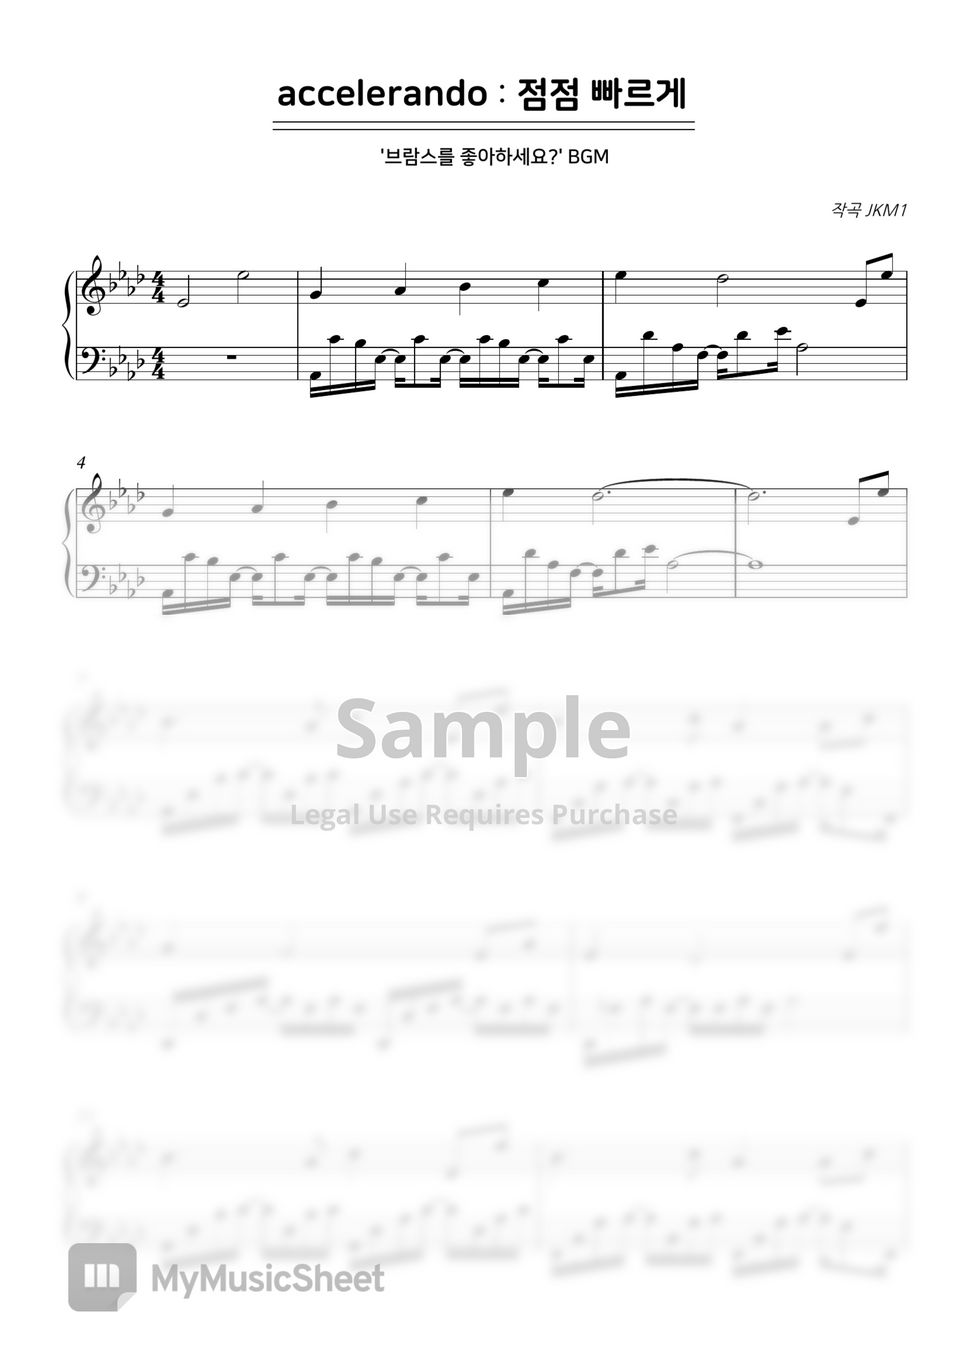 Do you like Brahms? (OST) - accelerando (BGM) by SweetPiano